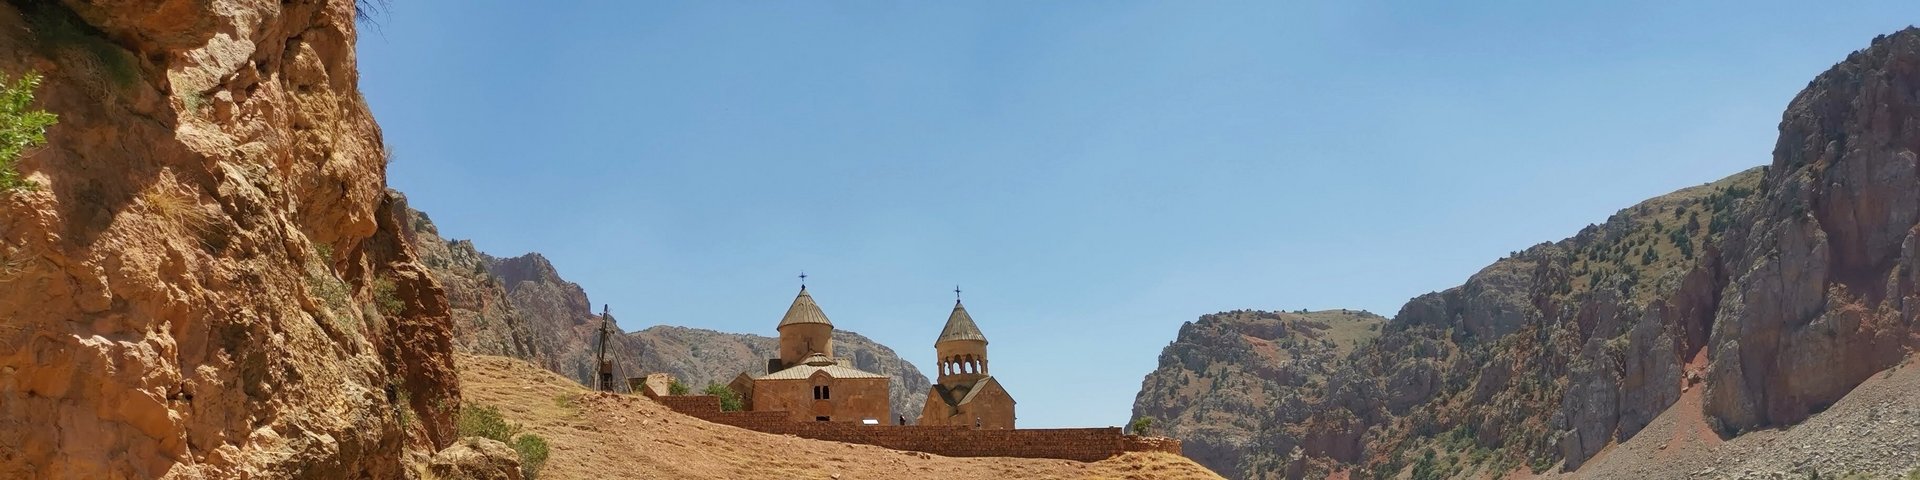 Wanderung zum Kloster Noravank in Armenien